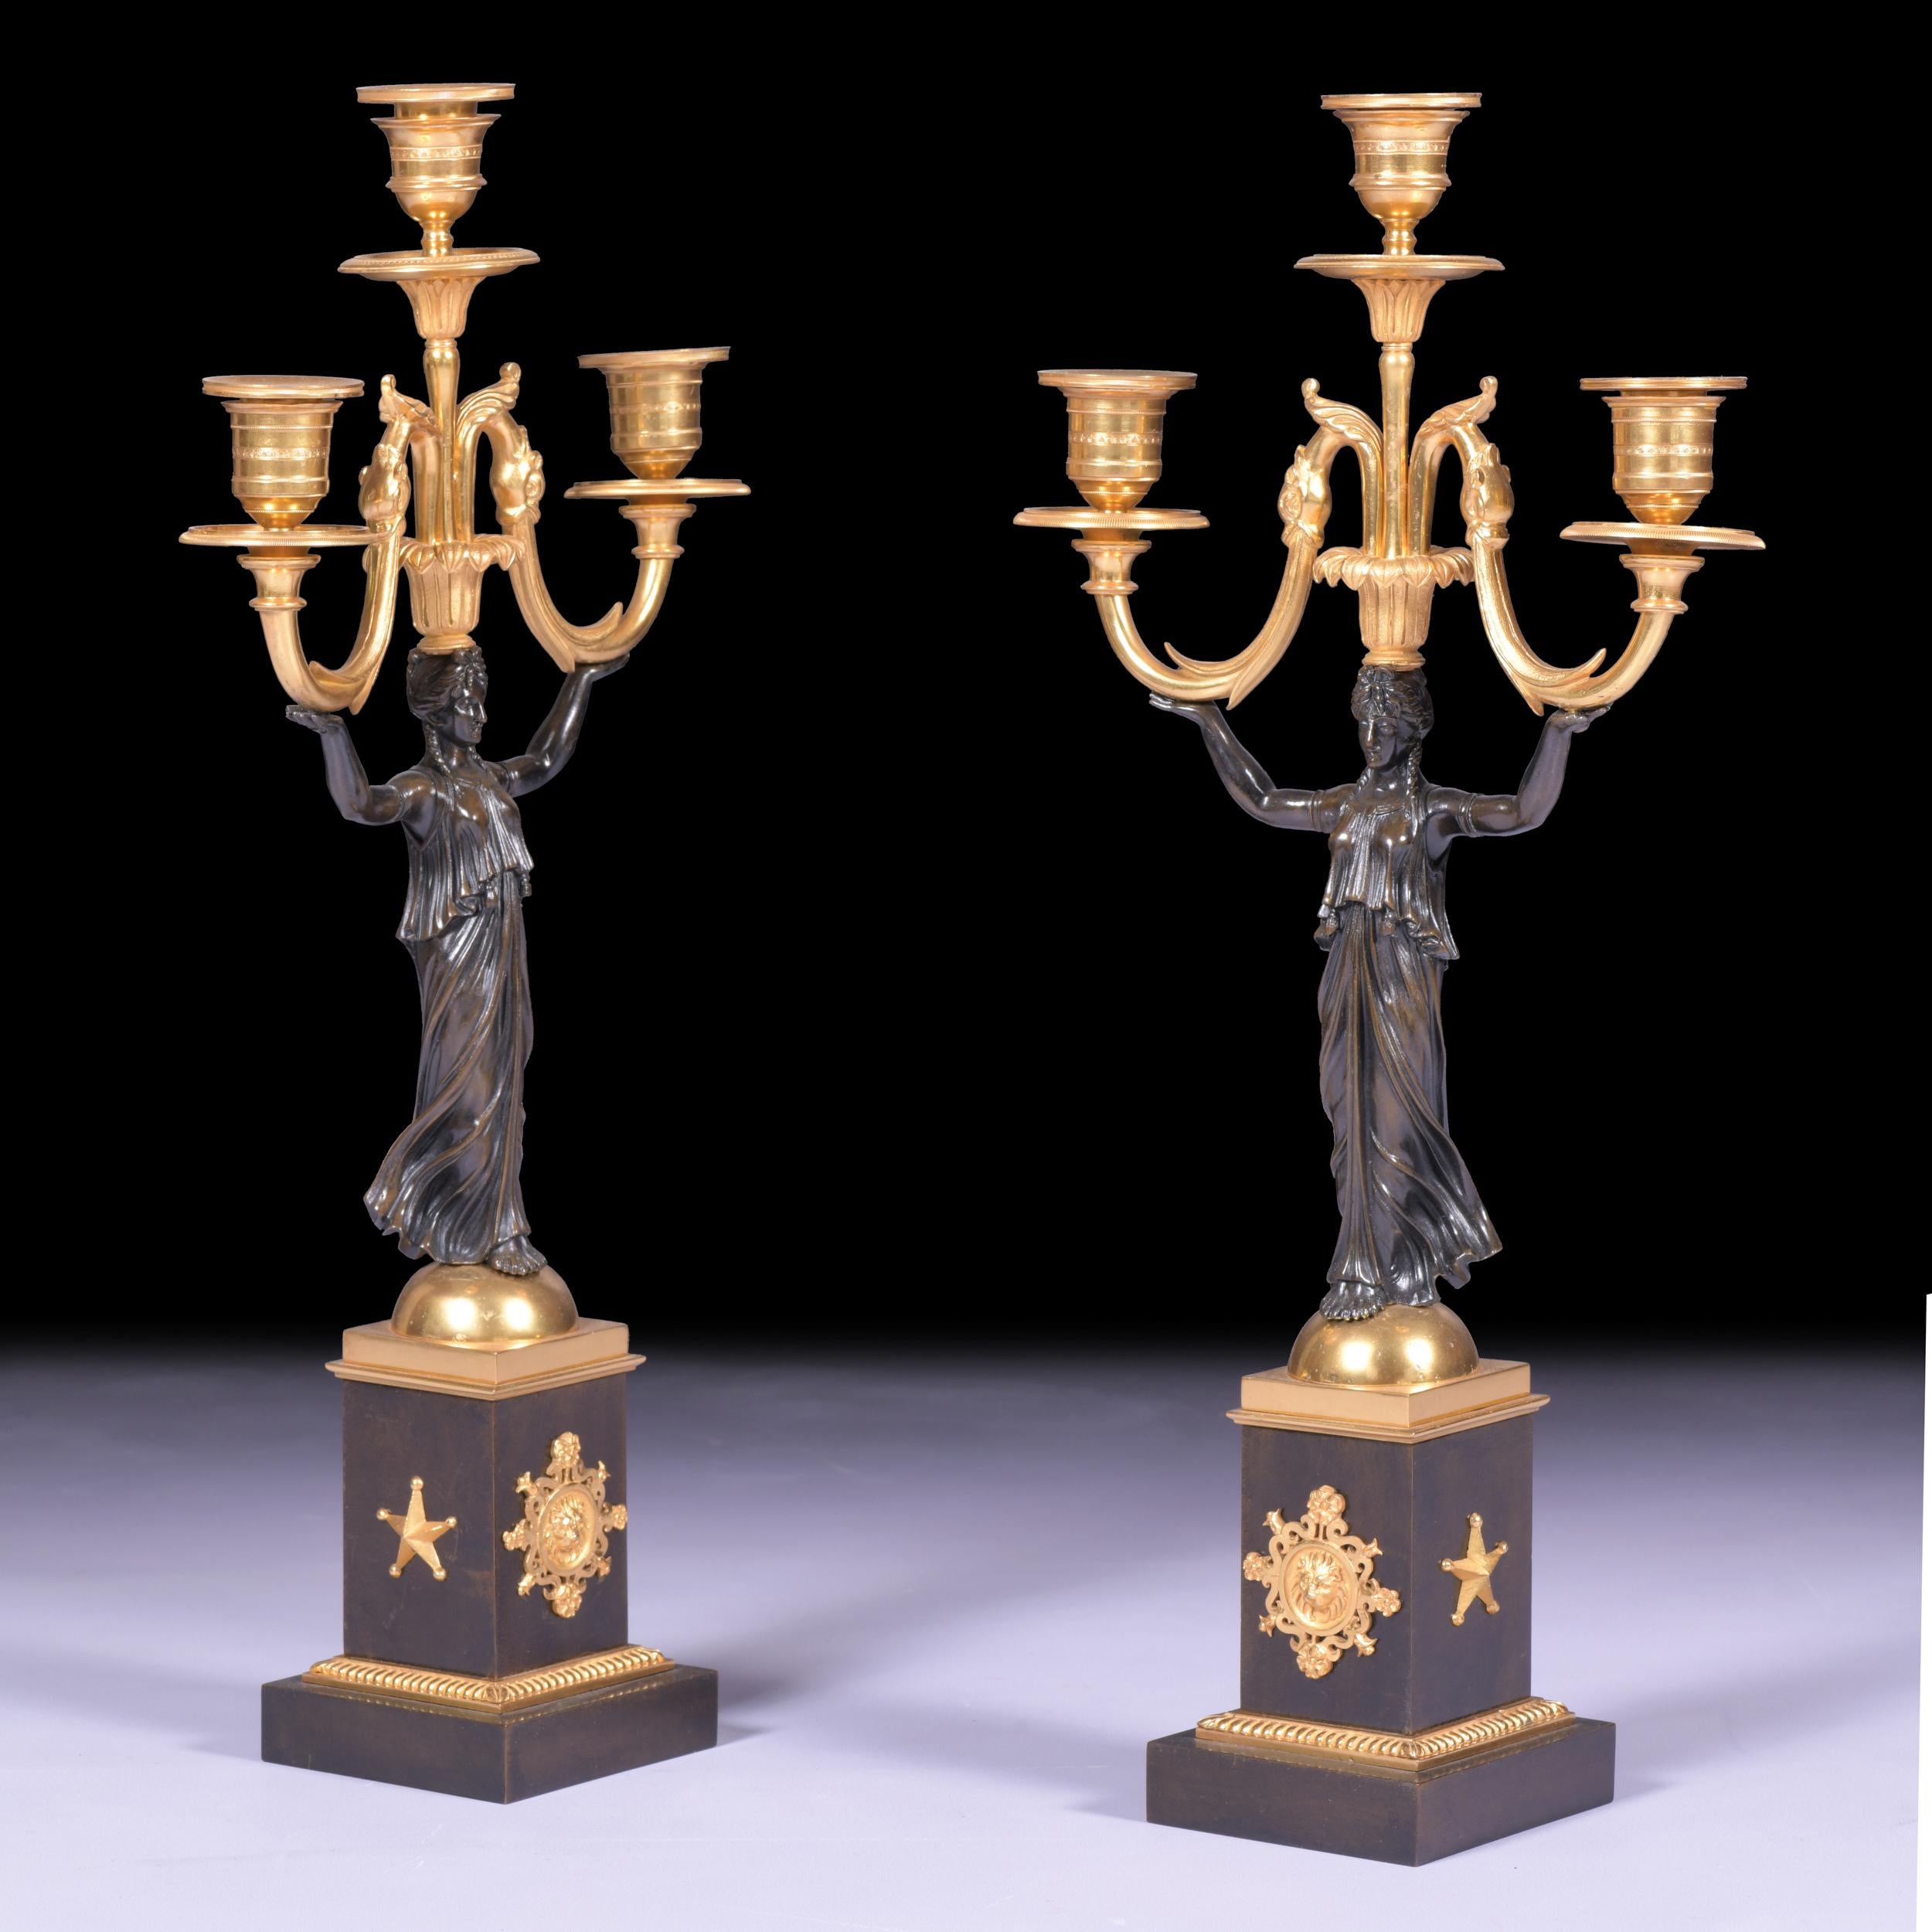 Ein atemberaubendes Paar französischer 3-Licht-Kandelaber aus patinierter Bronze und Ormolu im neoklassischen Stil des 19. Jeder Kandelaber steht auf einem quadratischen Sockel mit Ormolu-Stützen und Blattwerk unter einem Perlenband. Der patinierte